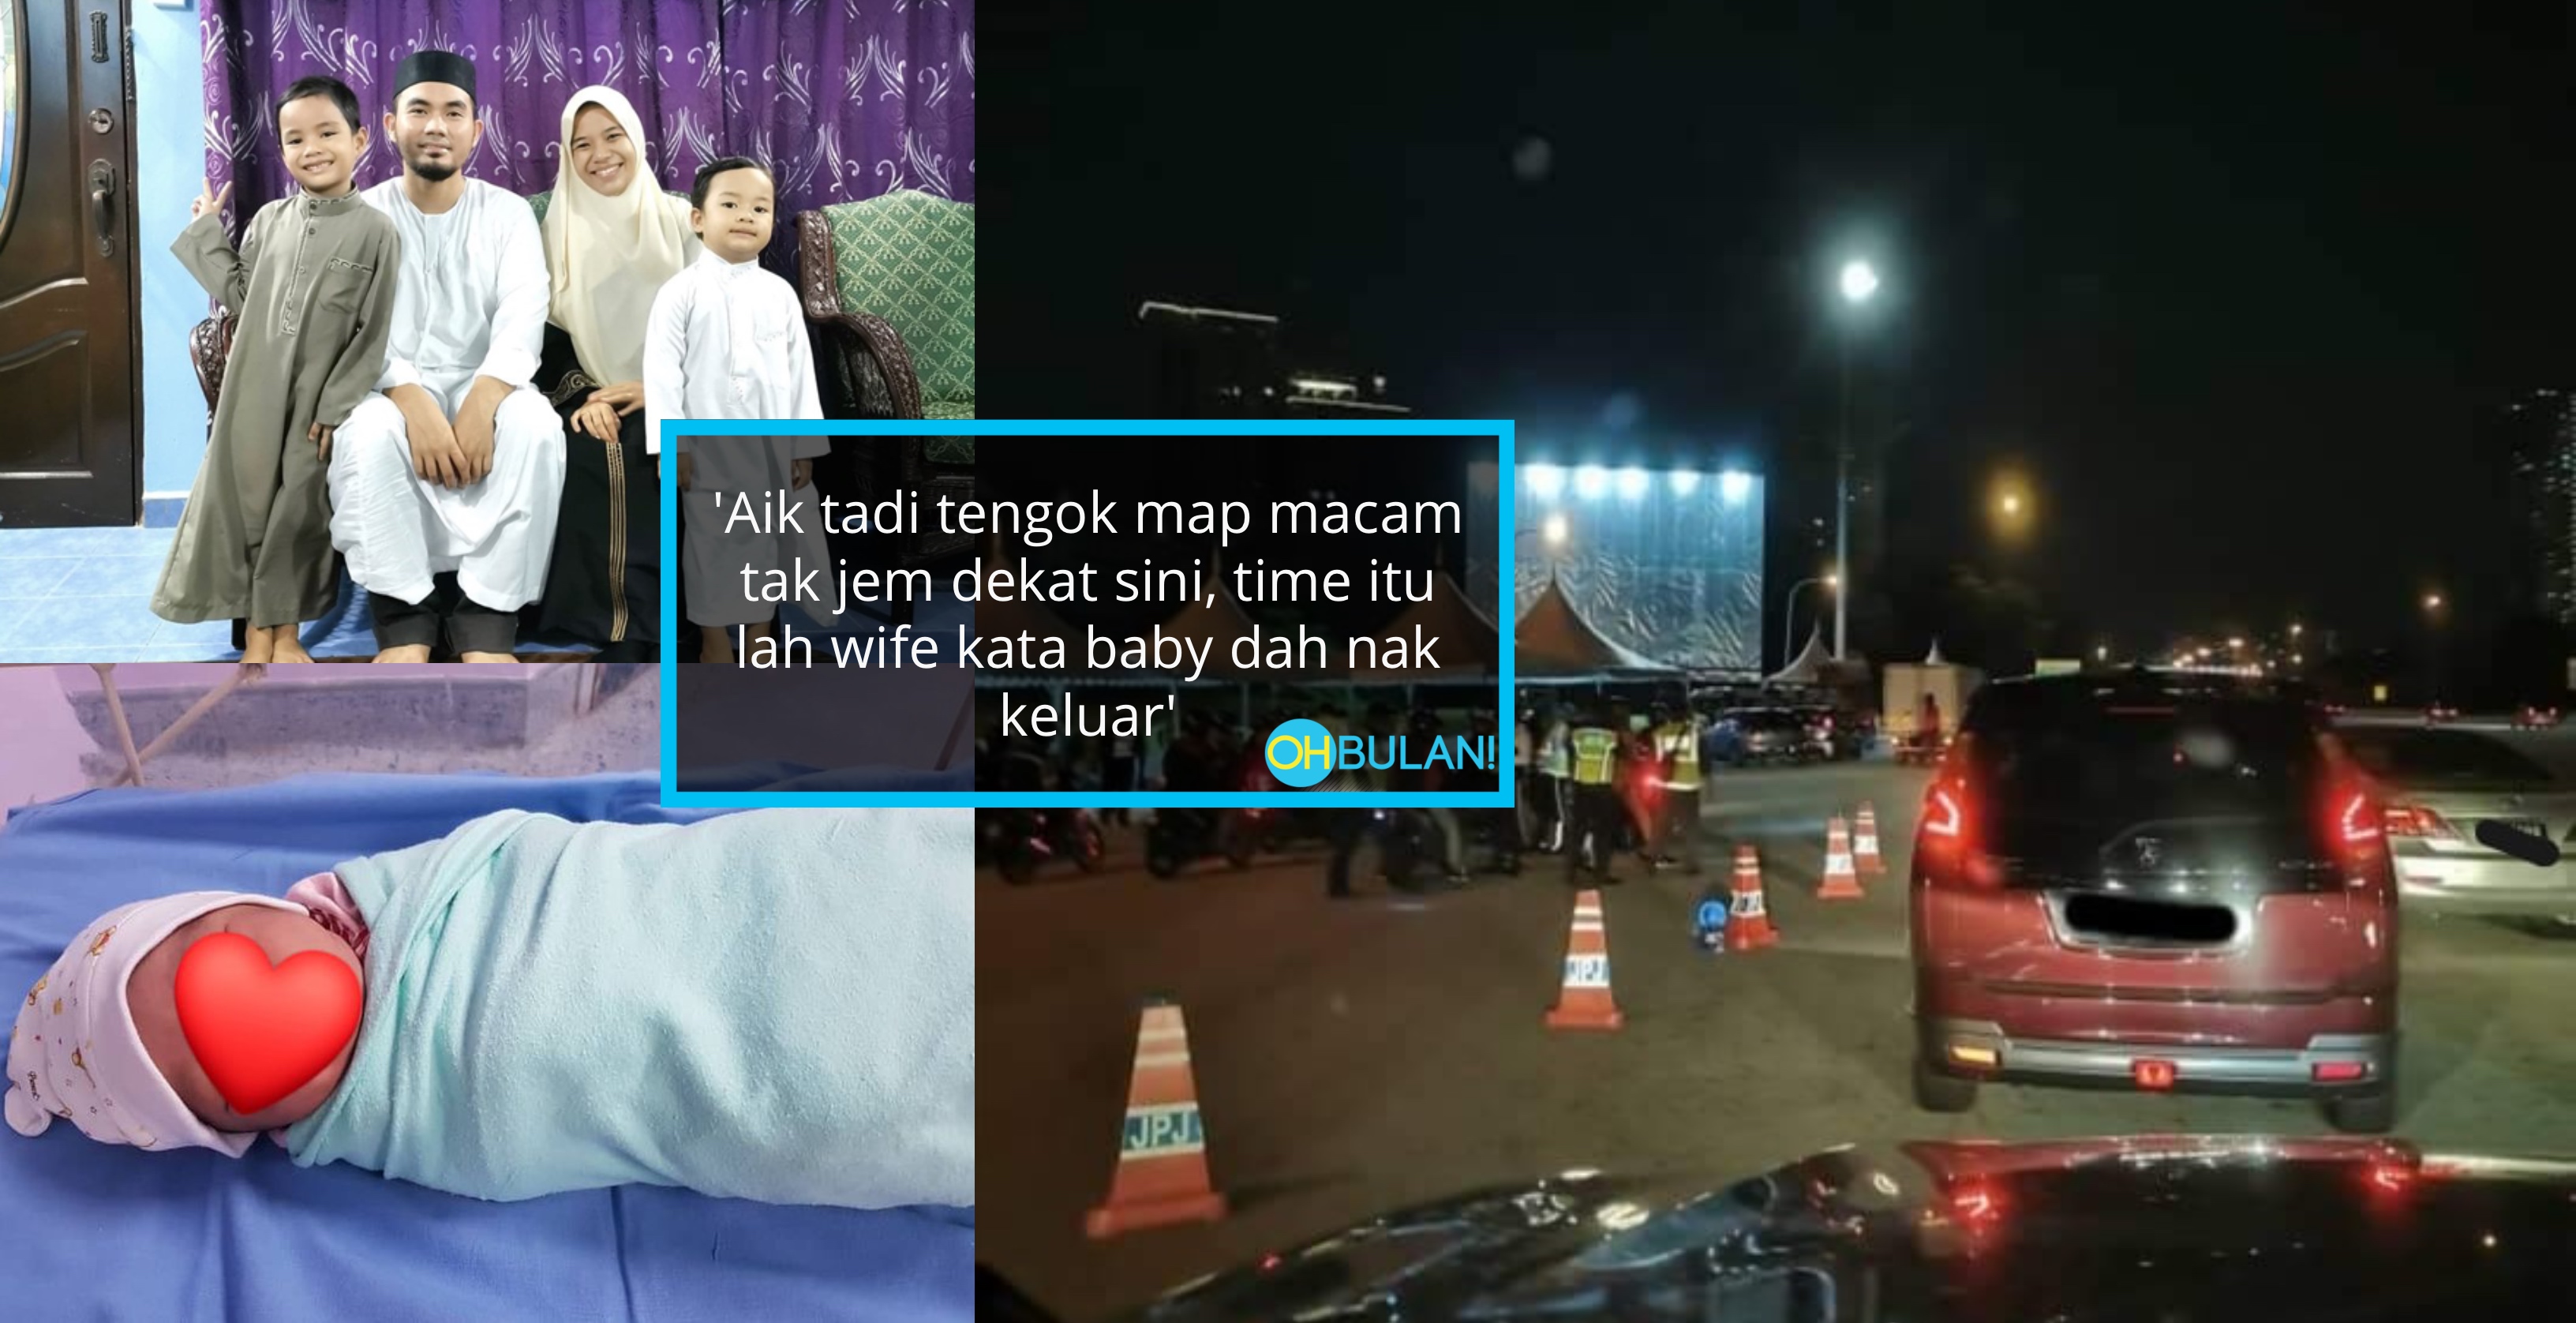 Jalan Raya Sesak, Suami Jadi ‘Bidan’ Sambut Anak Dalam Kereta, Siap JPJ Escort Lagi!